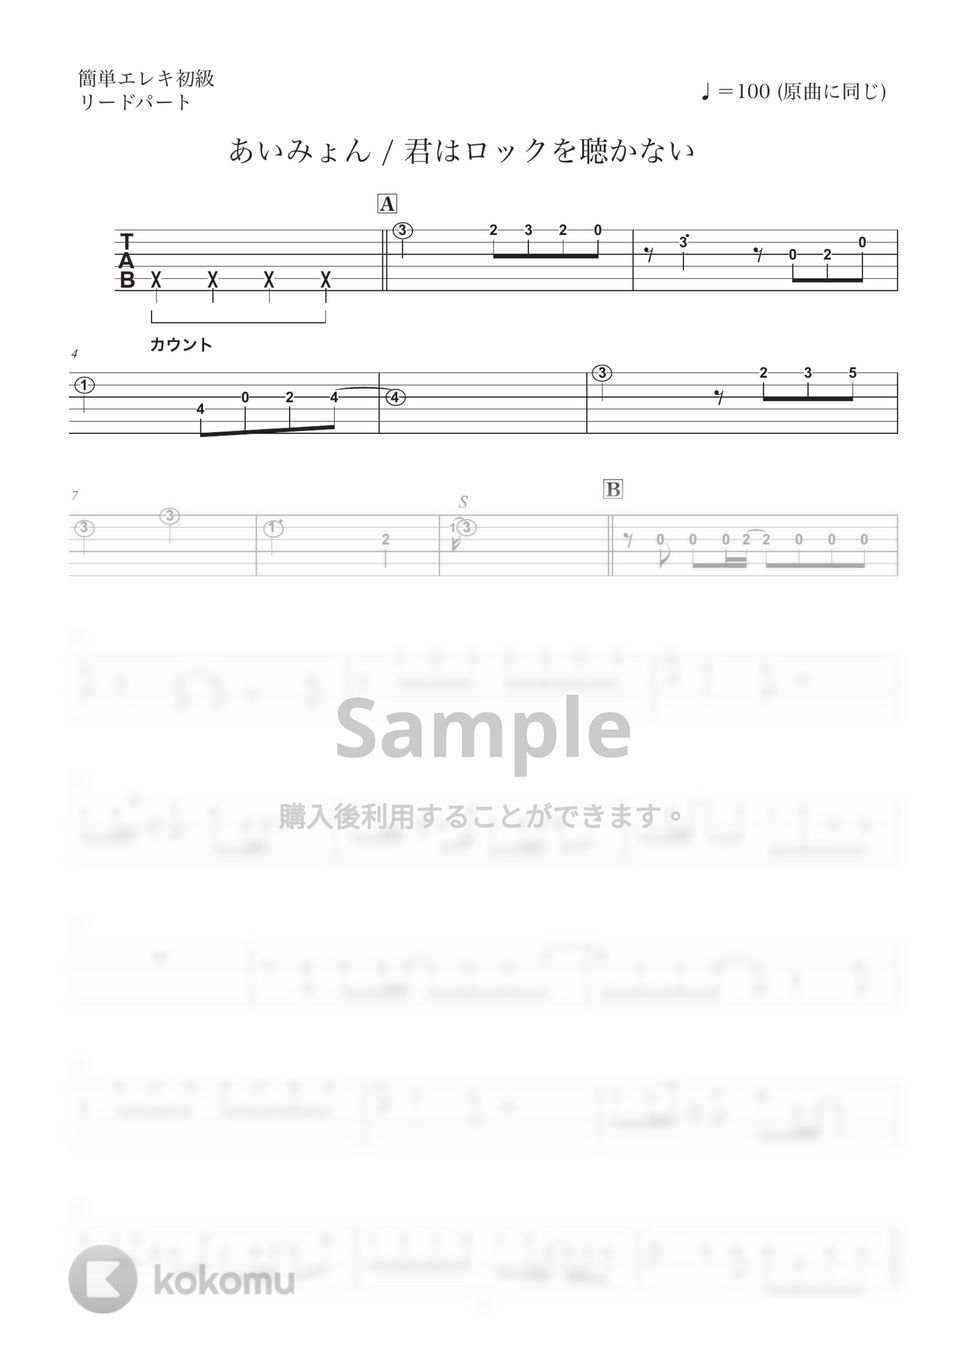 あいみょん - 君はロックを聴かない (エレキ/リード&歌メロ弾き/簡単アレンジ) by コウダタカシ